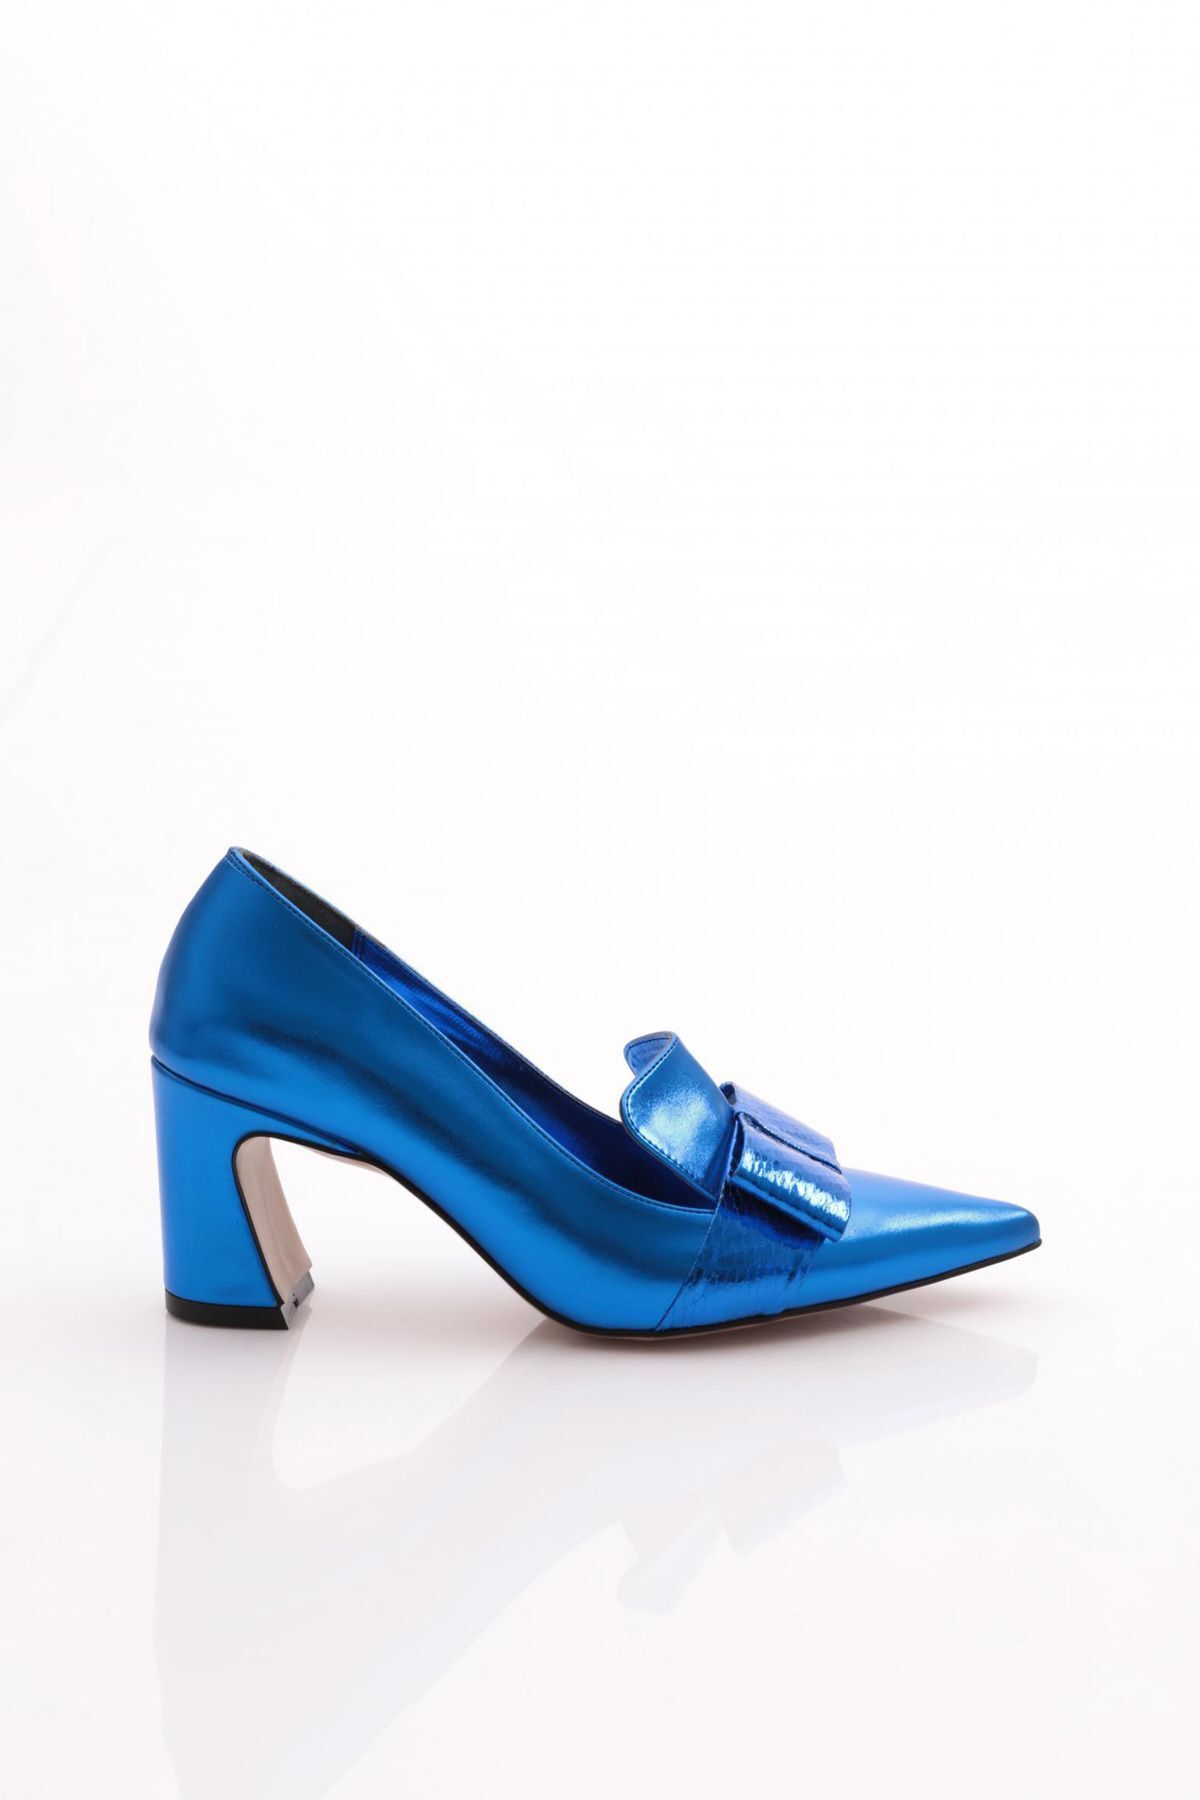 Dgn 159 Kadın Kurdela Desenli Topuklu Ayakkabı Mavi Metalik